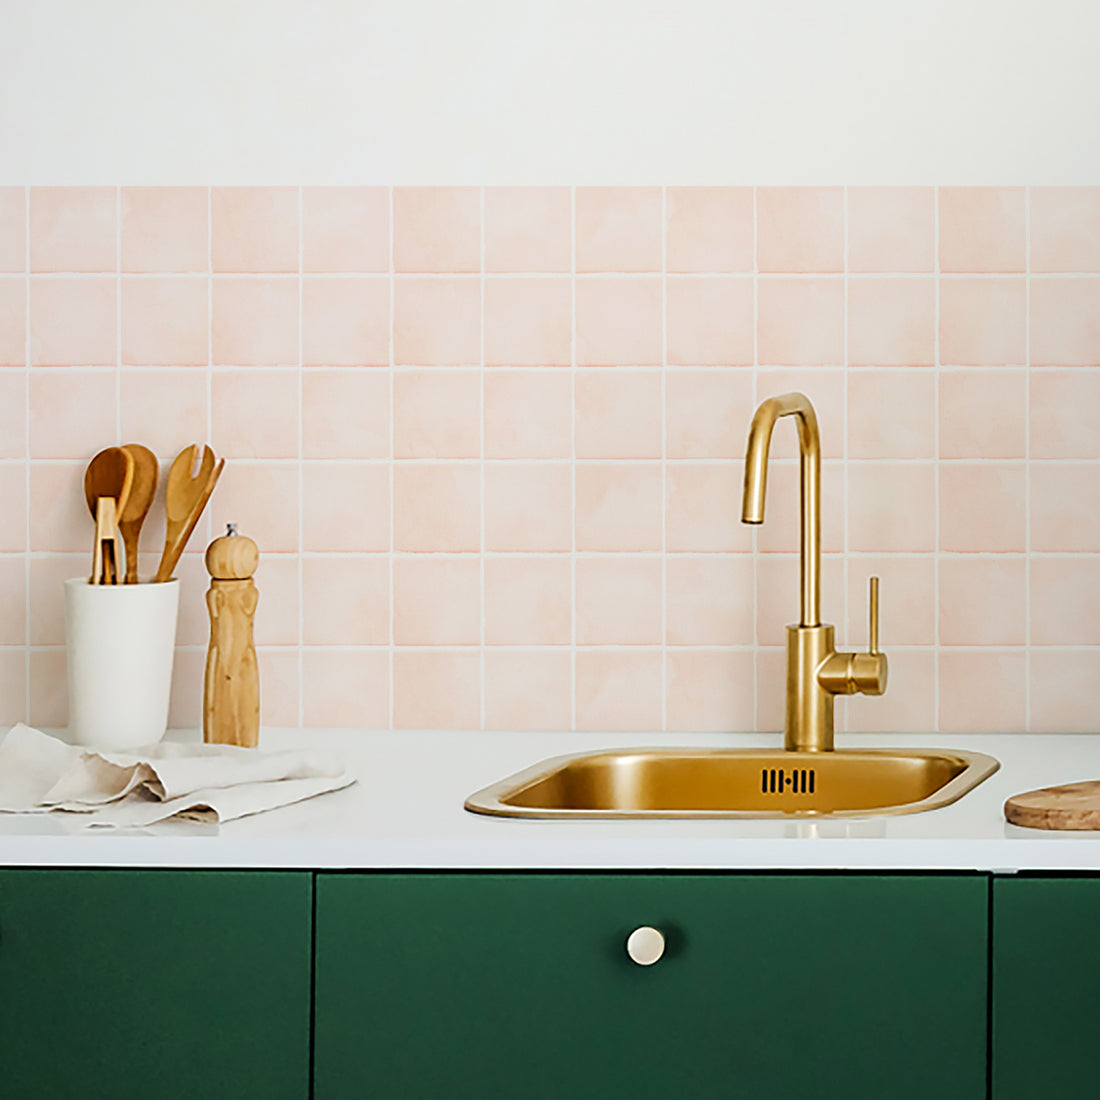 light pink backsplash tile designs in green kitchen